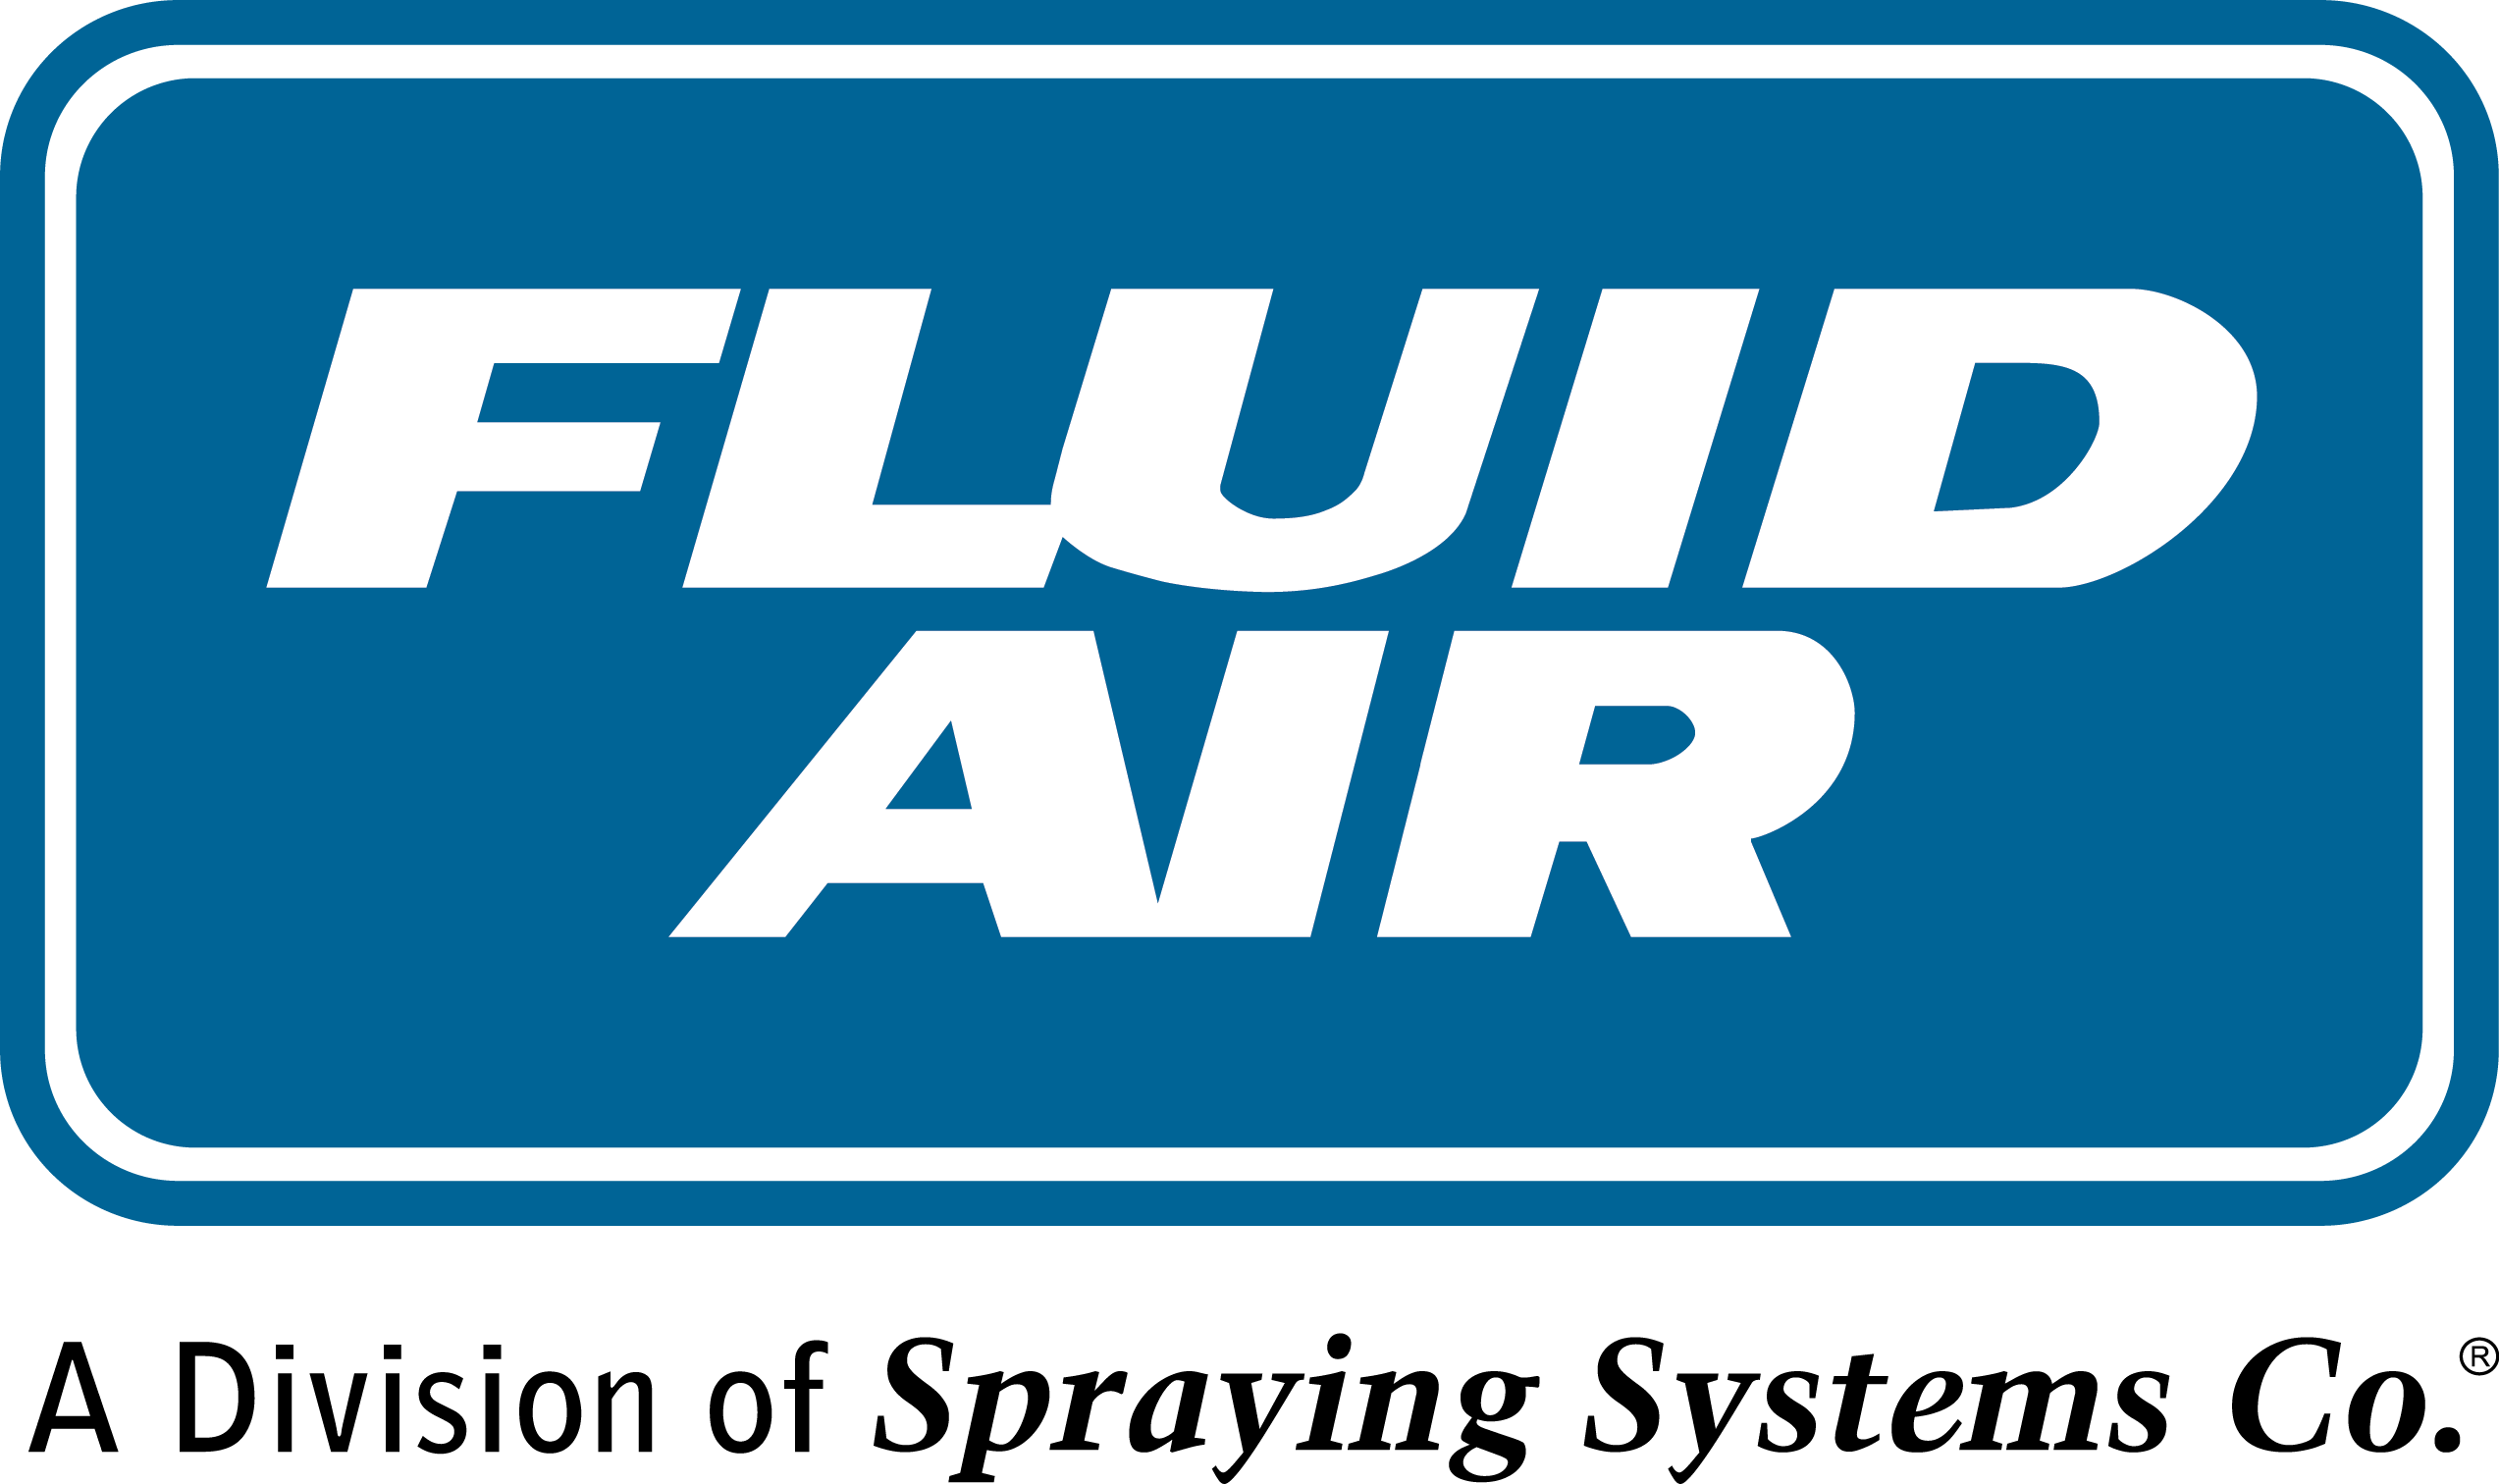 Fluid Air